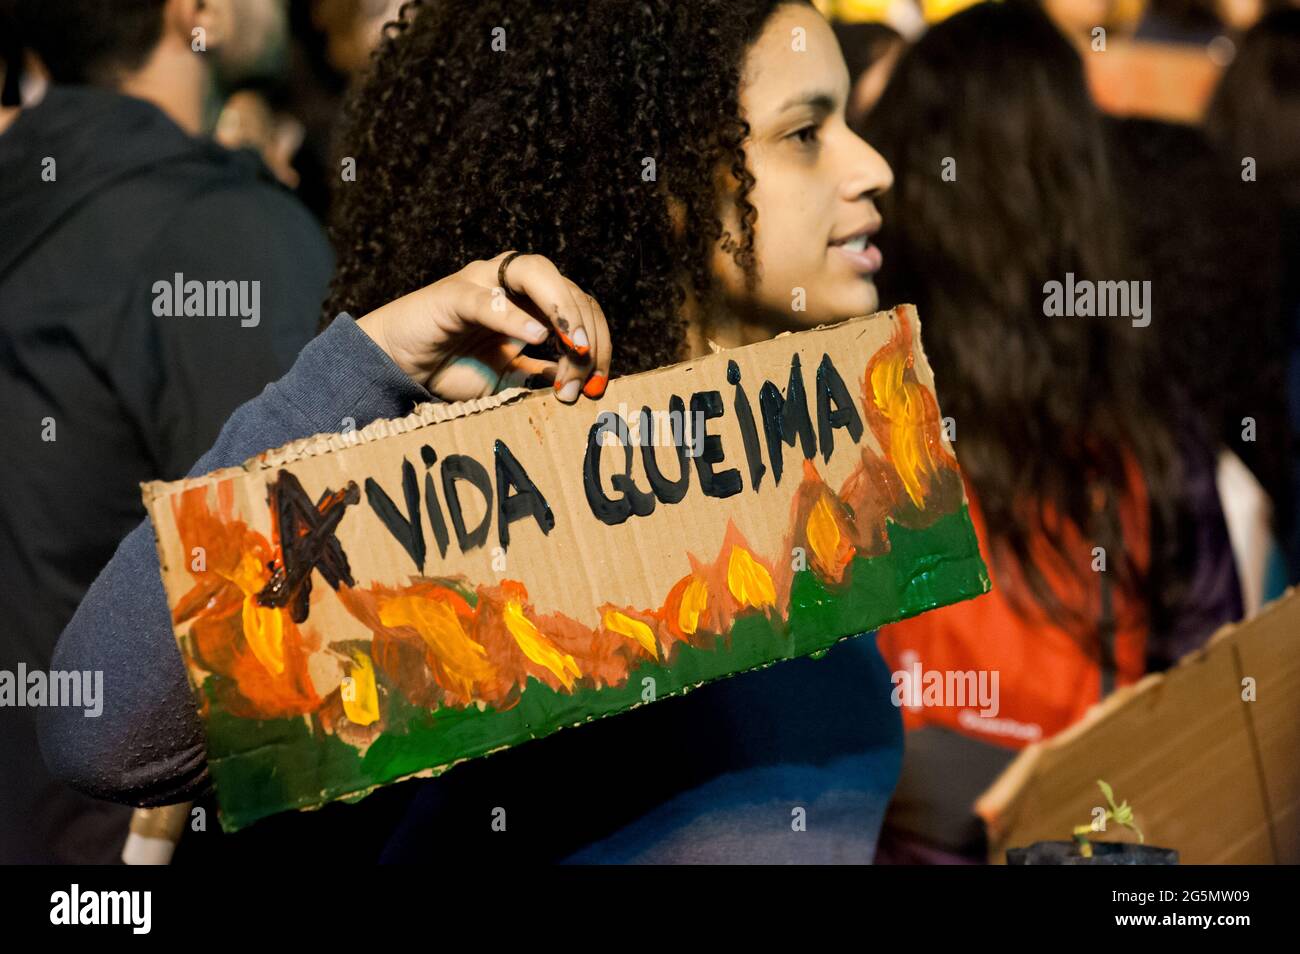 Rio de Janeiro, Brasile - 23 agosto 2019: Una donna tiene un cartello che dice "la vita brucia" durante una protesta contro gli incendi che infuriano nell'Amazzonia. Foto Stock